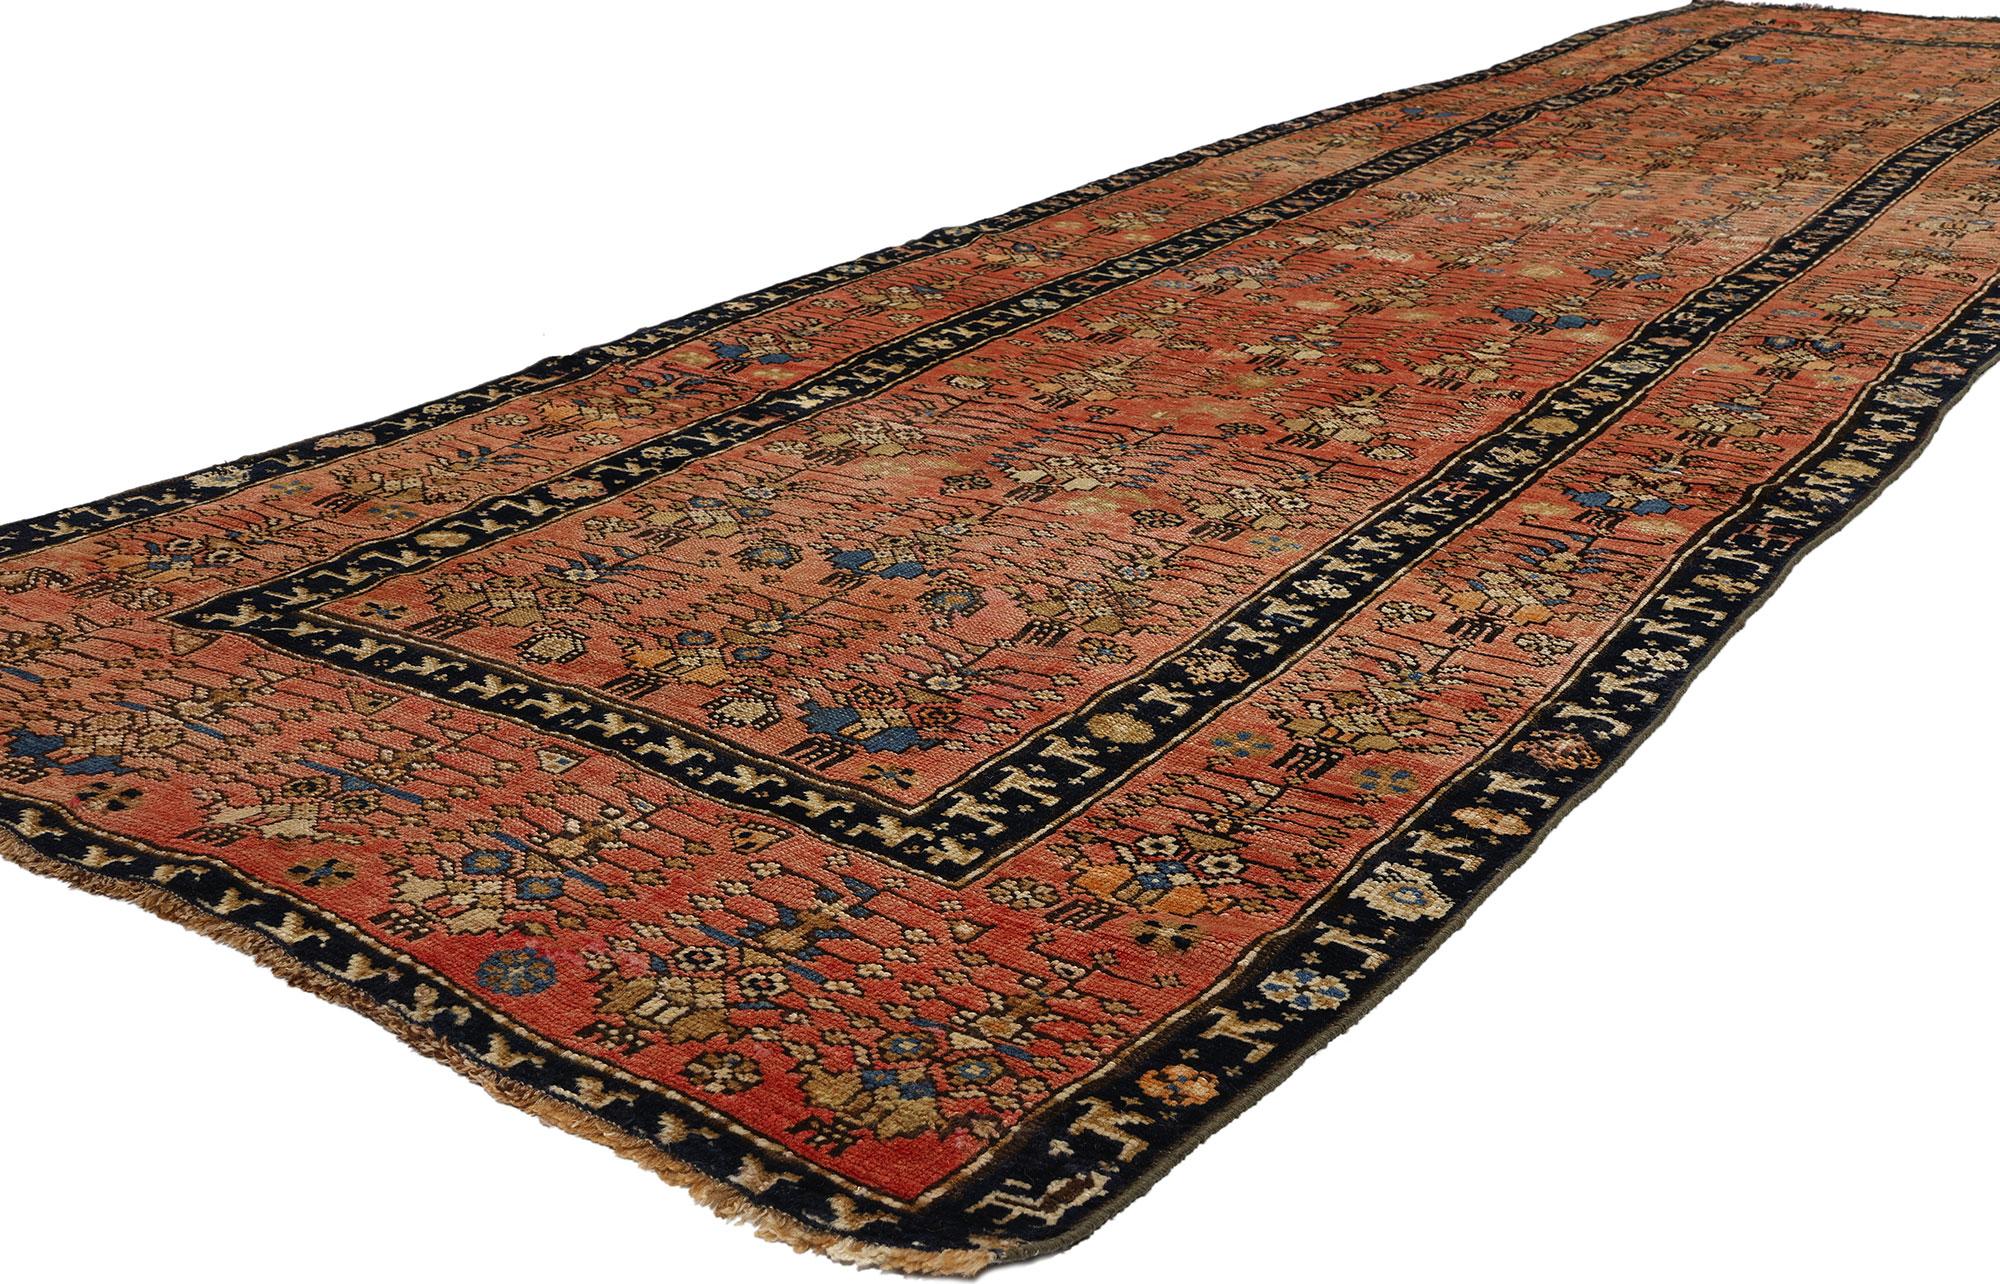 53878 Antiker kaukasischer Karabagh-Teppich Läufer, 03'09 x 14'01. Kaukasische Karabagh-Teppiche sind traditionelle handgewebte Teppiche, die aus der historischen Region Karabagh im heutigen Aserbaidschan stammen und für ihre leuchtenden Farben,